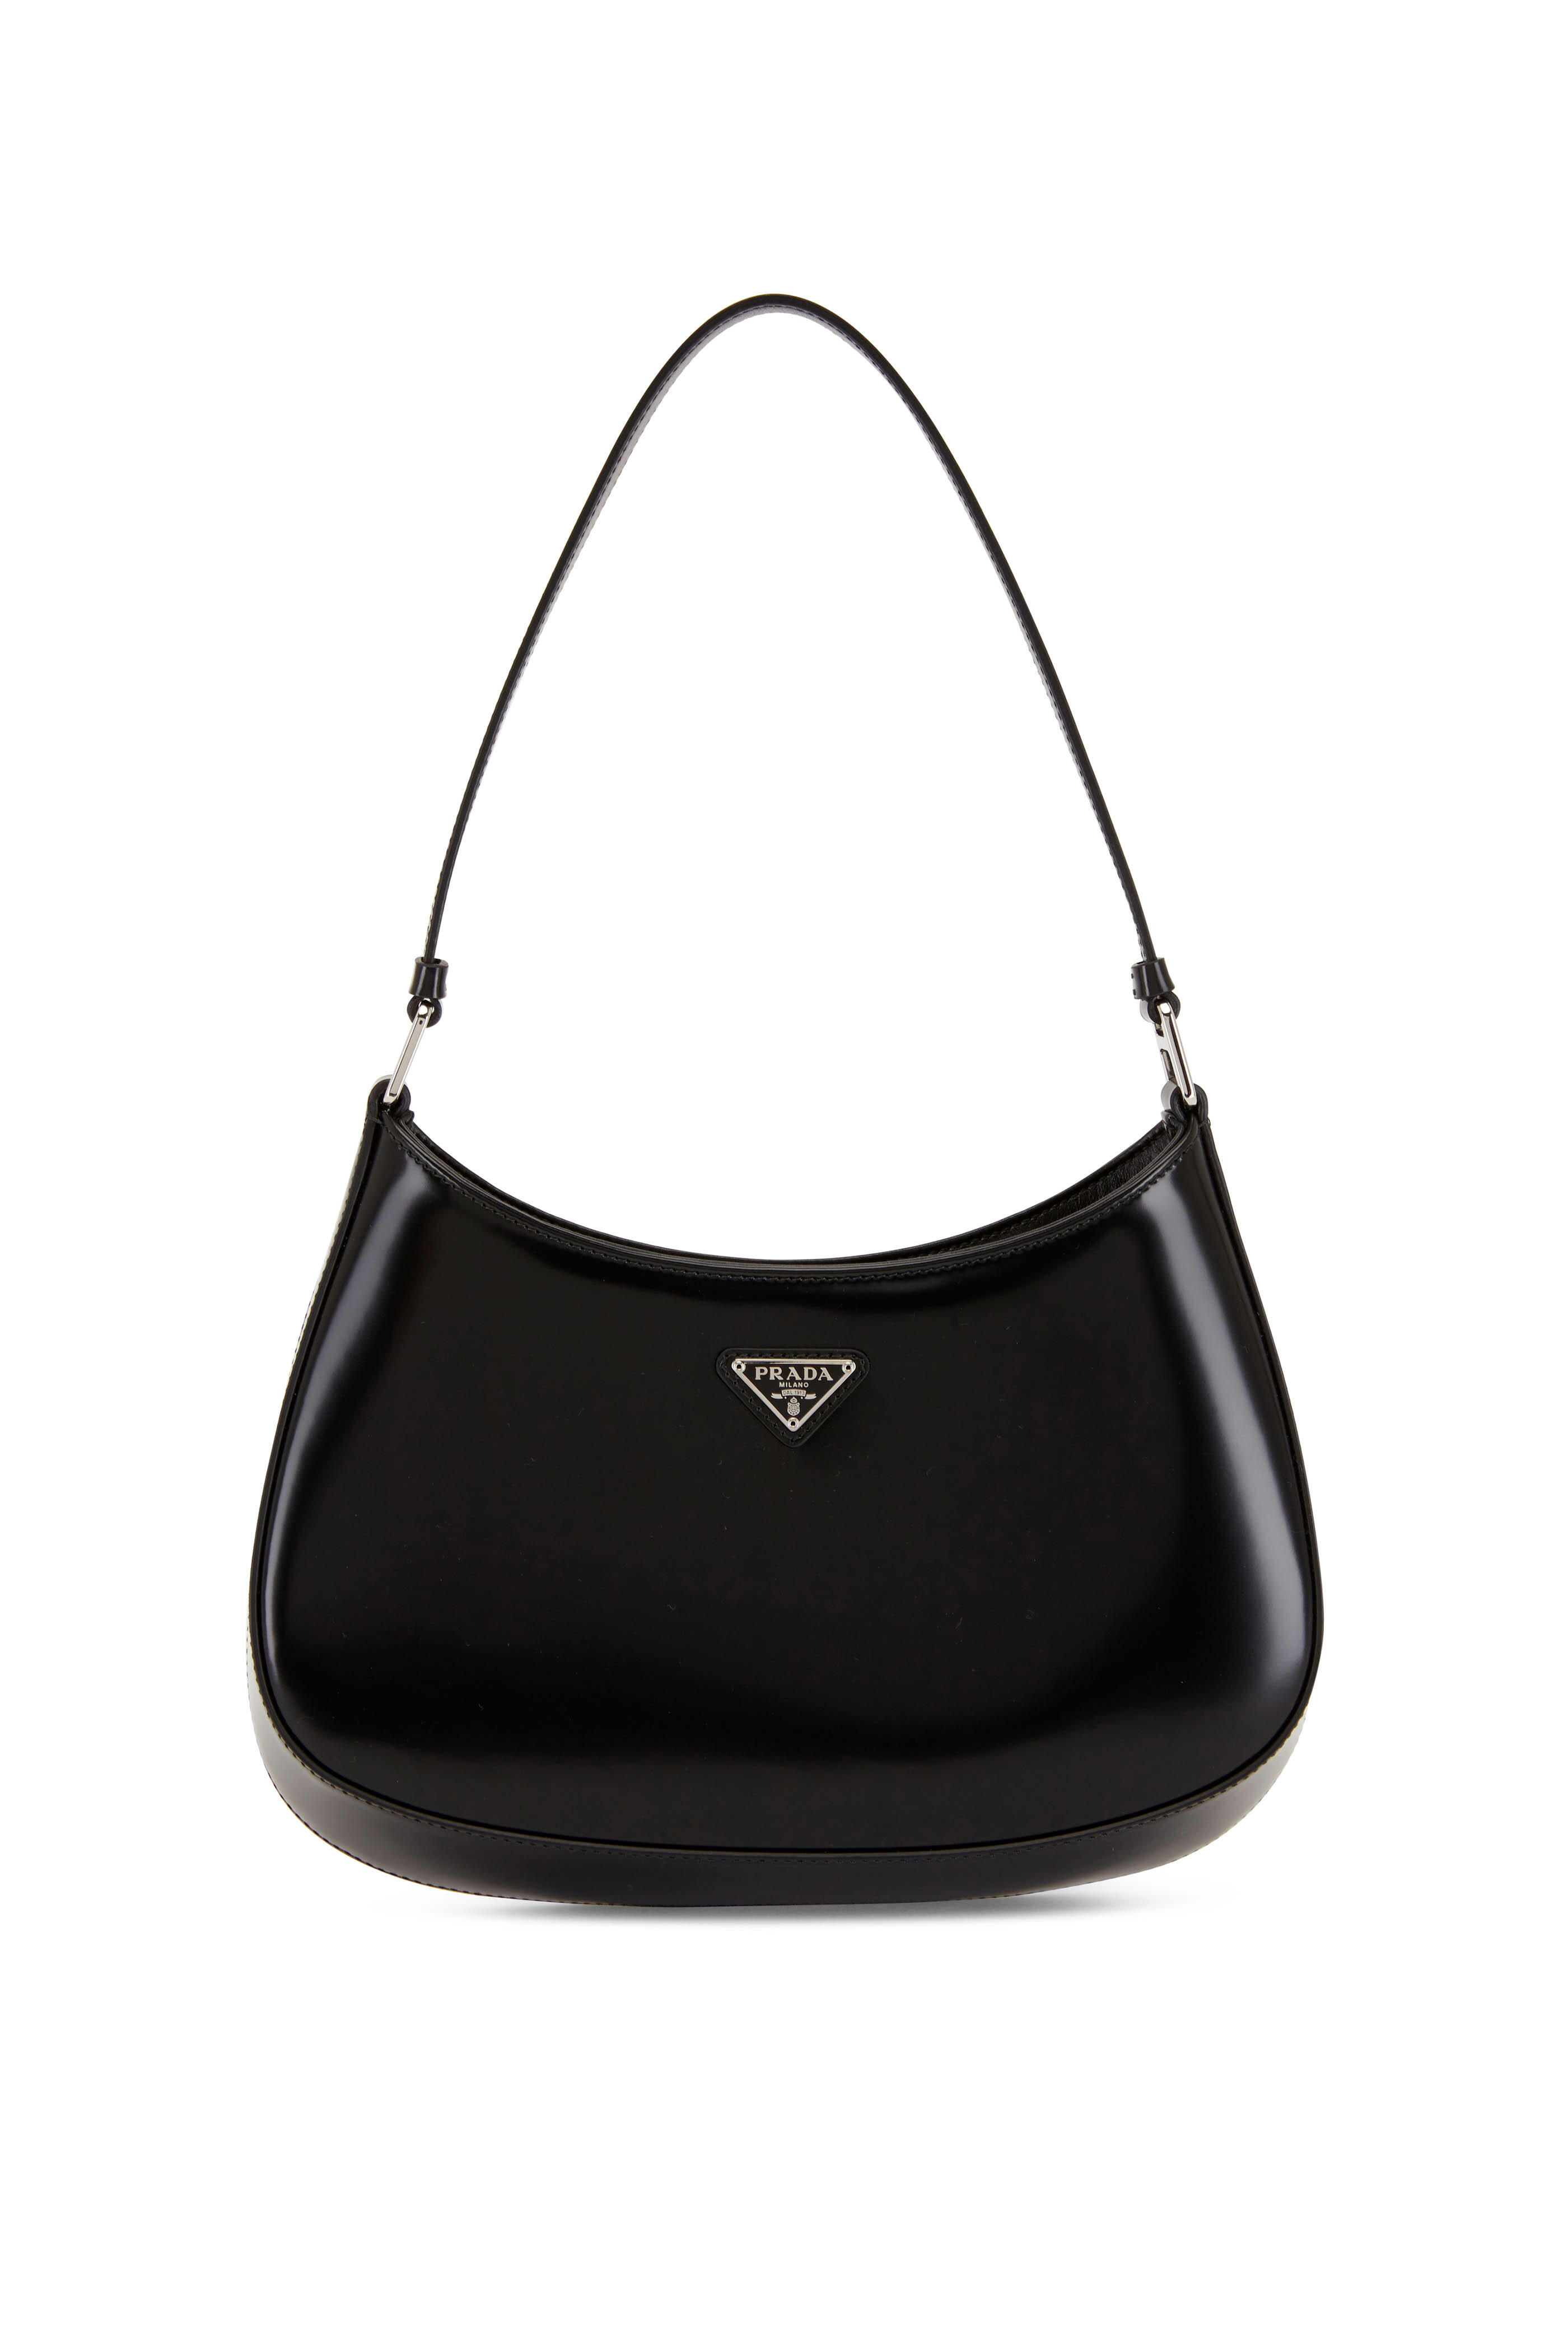 Black Cleo leather shoulder bag, Prada